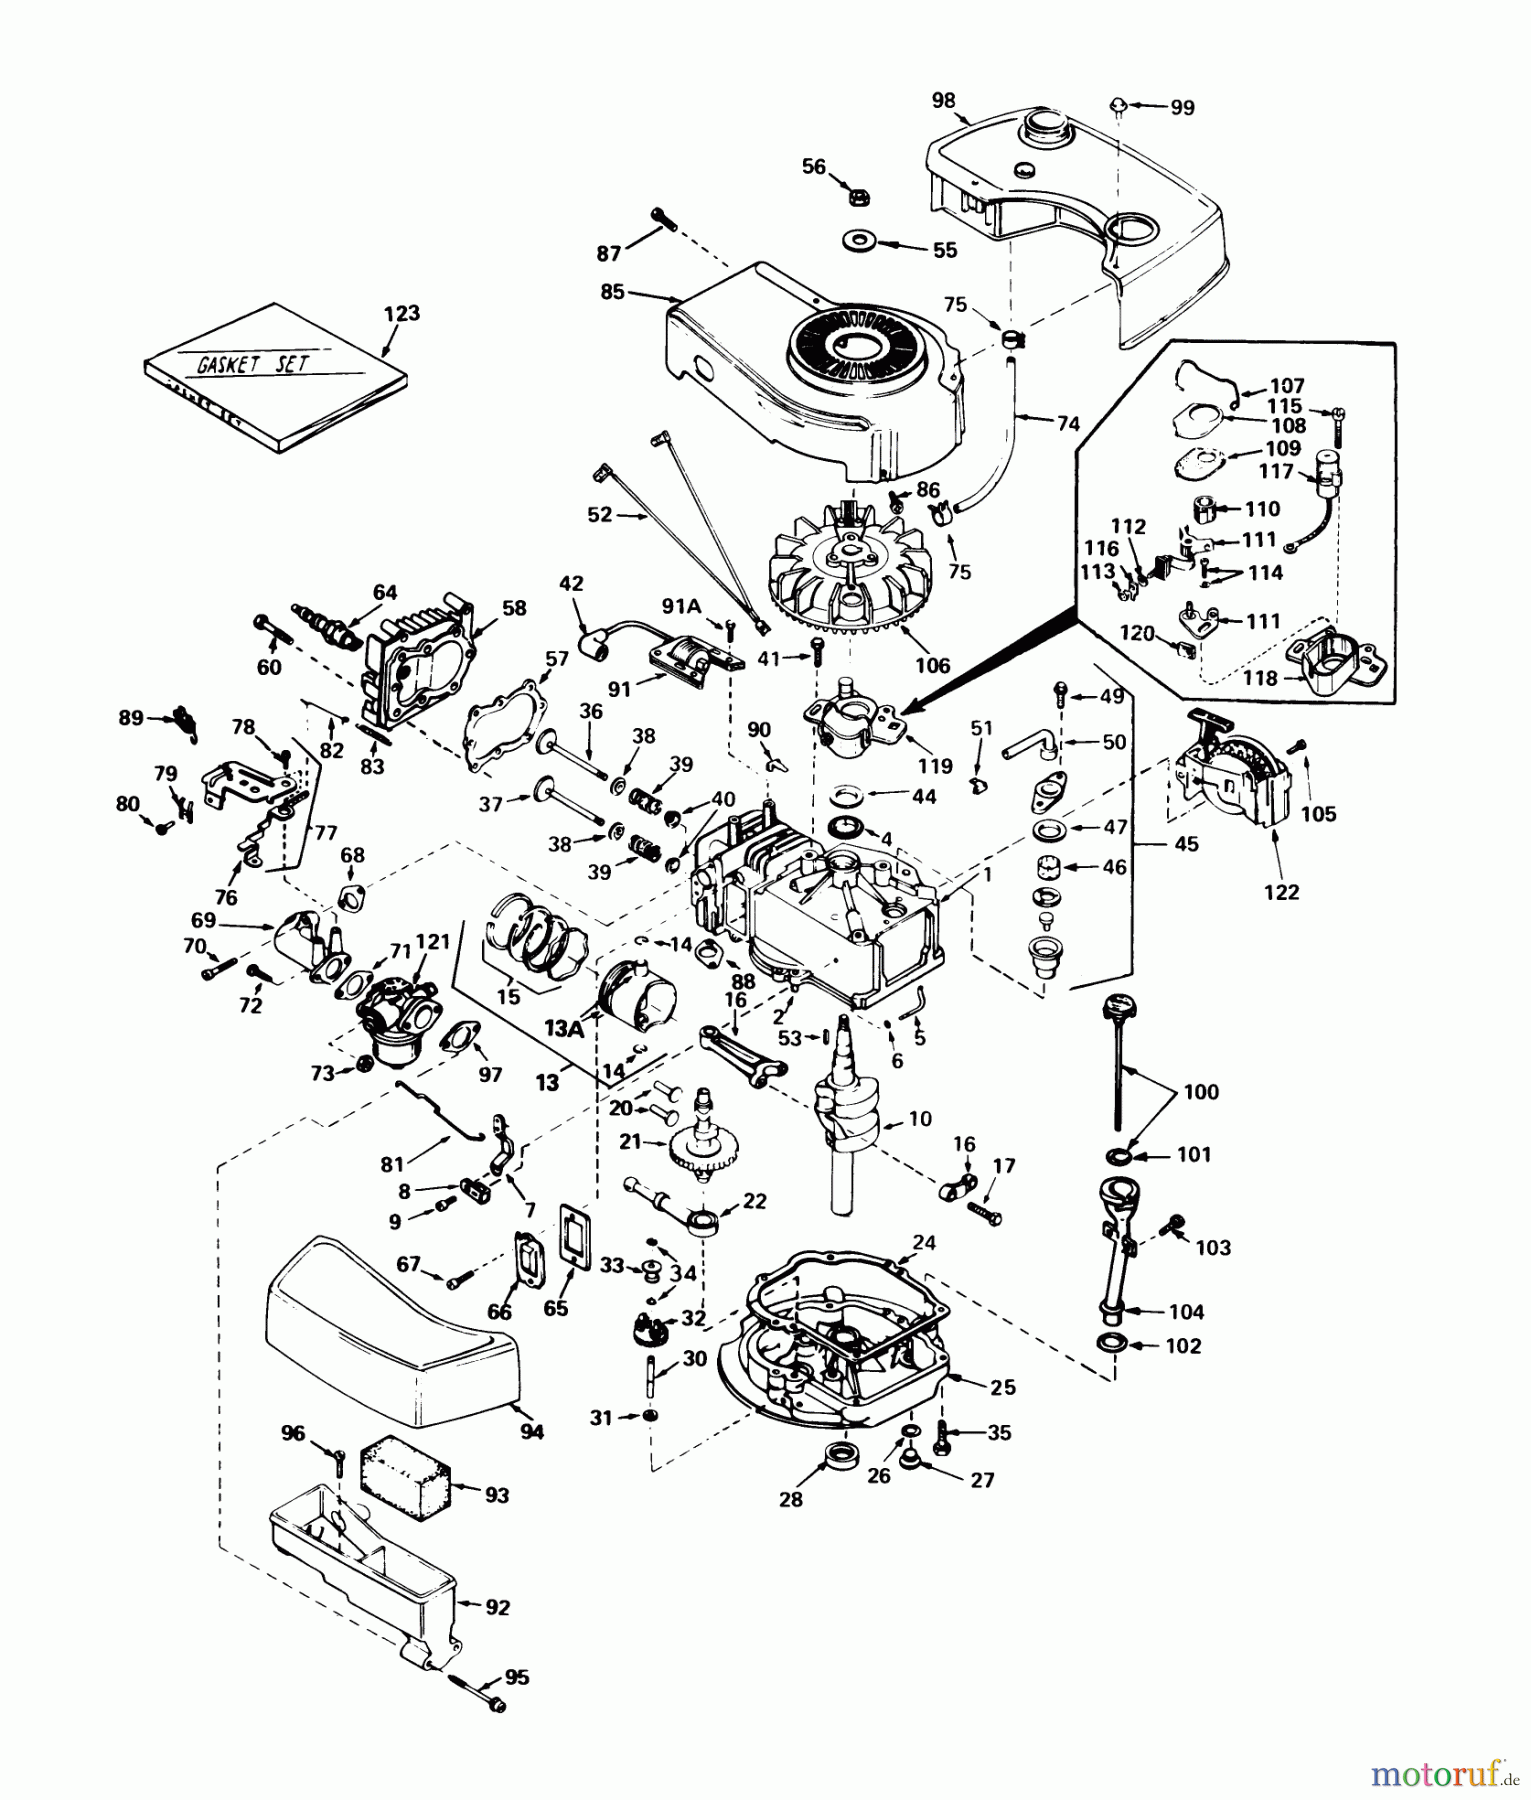  Toro Neu Mowers, Walk-Behind Seite 1 20775 - Toro Lawnmower, 1980 (0000001-0999999) ENGINE TECUMSEH MODEL NO. TNT-100-10070C